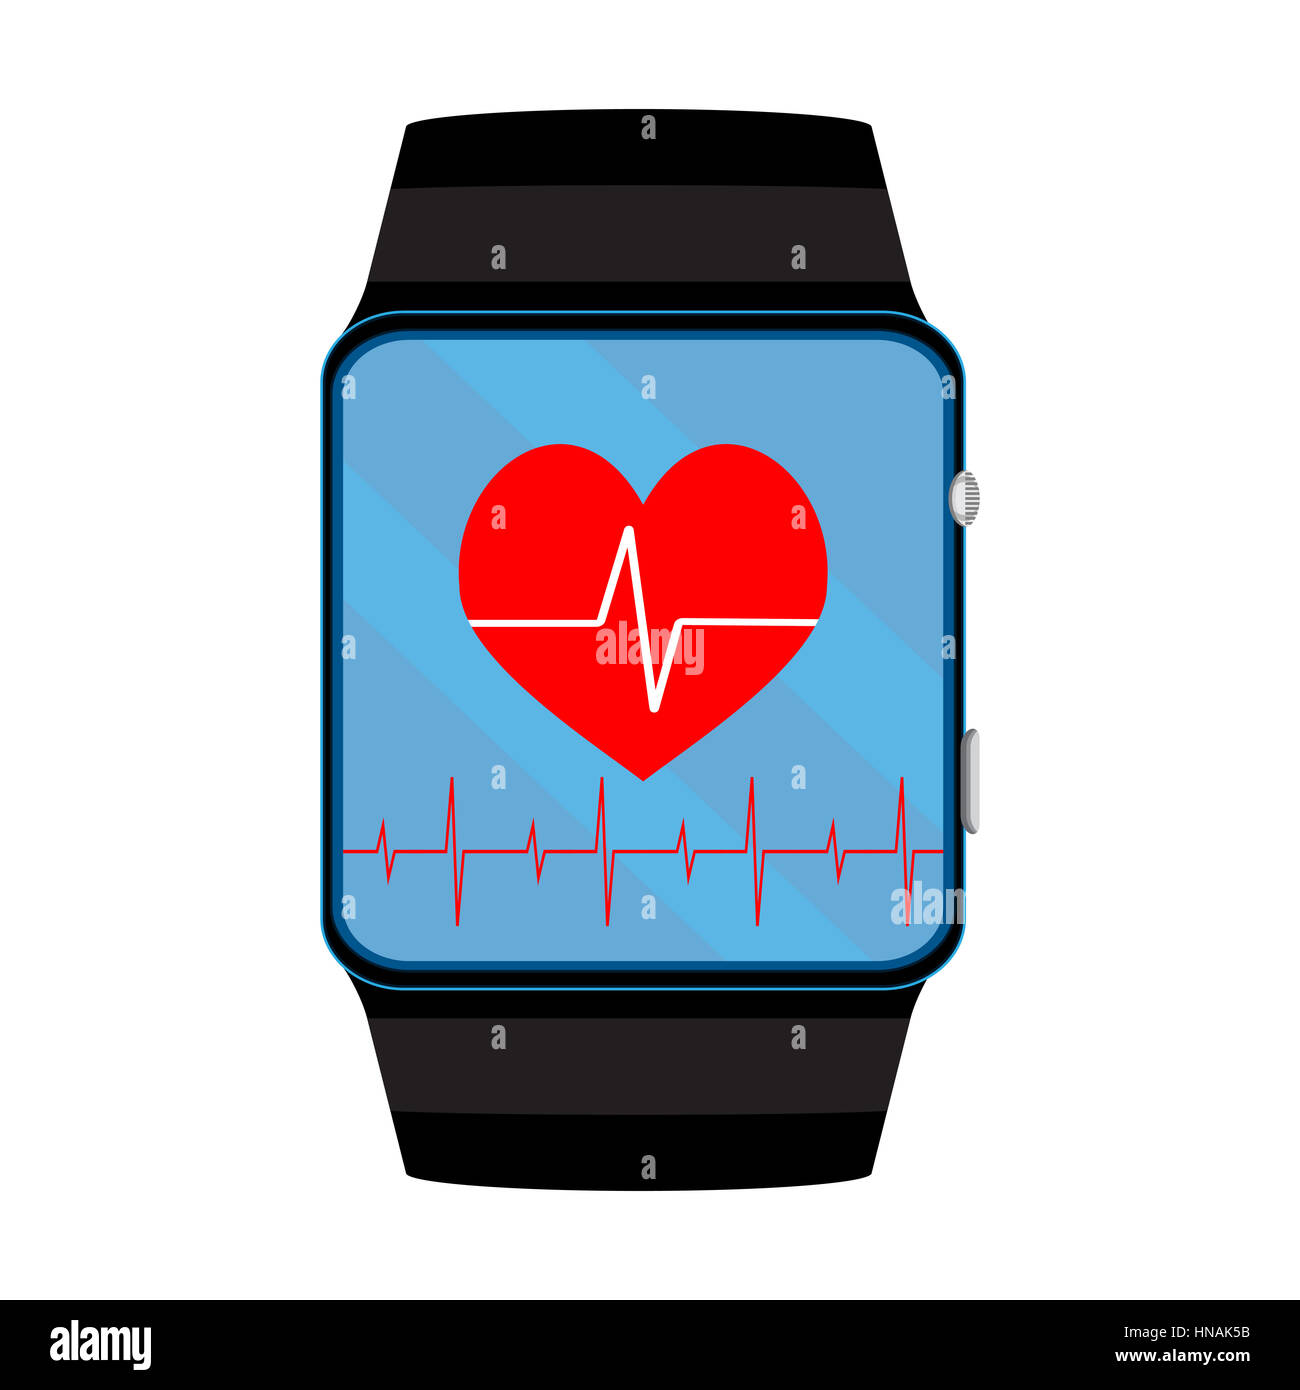 Pulsometer smart watch. Pouls et pulsation sur smartwatch, vector illustration Banque D'Images